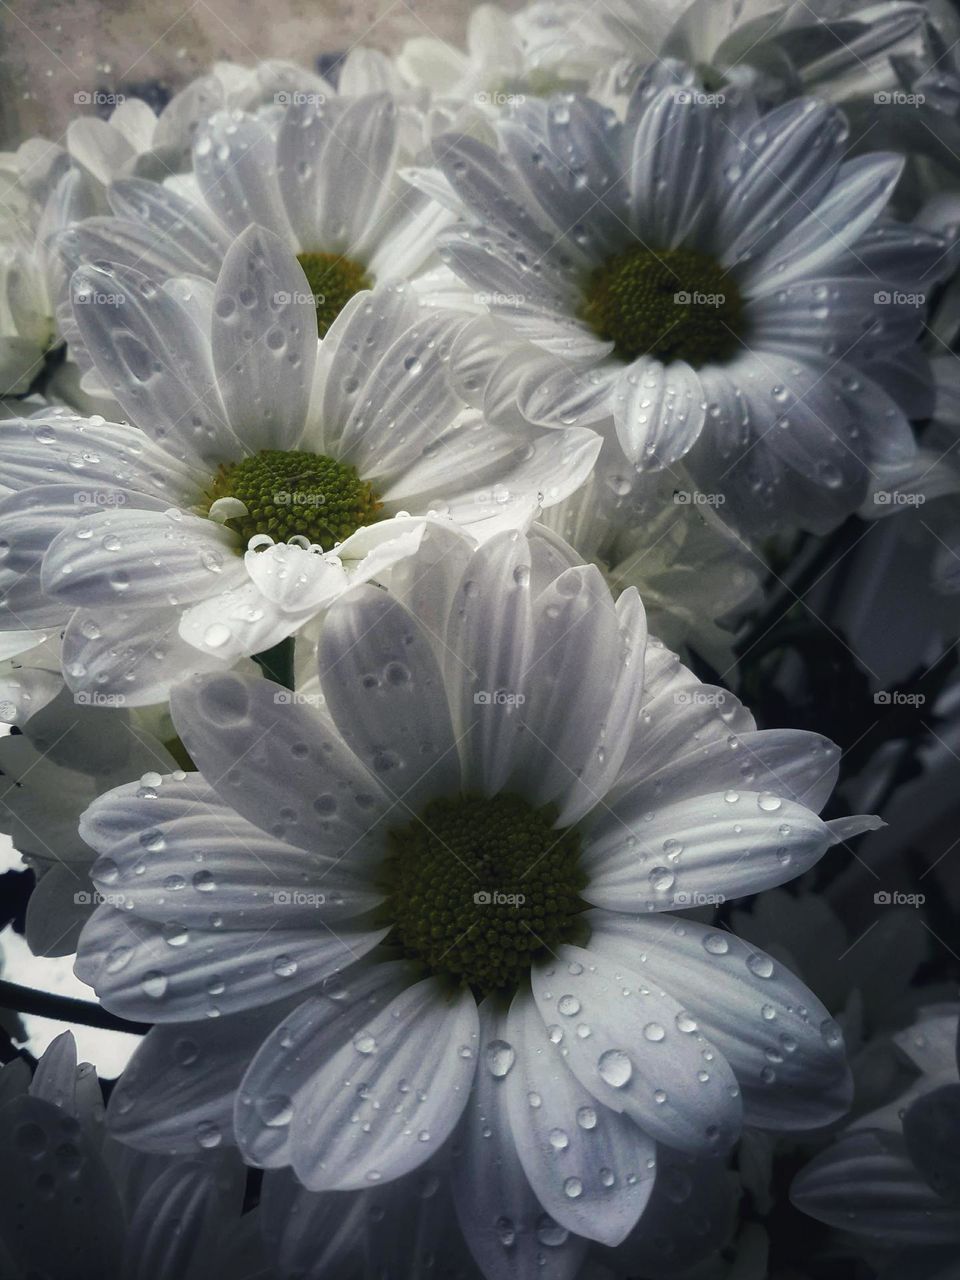 Beautiful flowers in drops